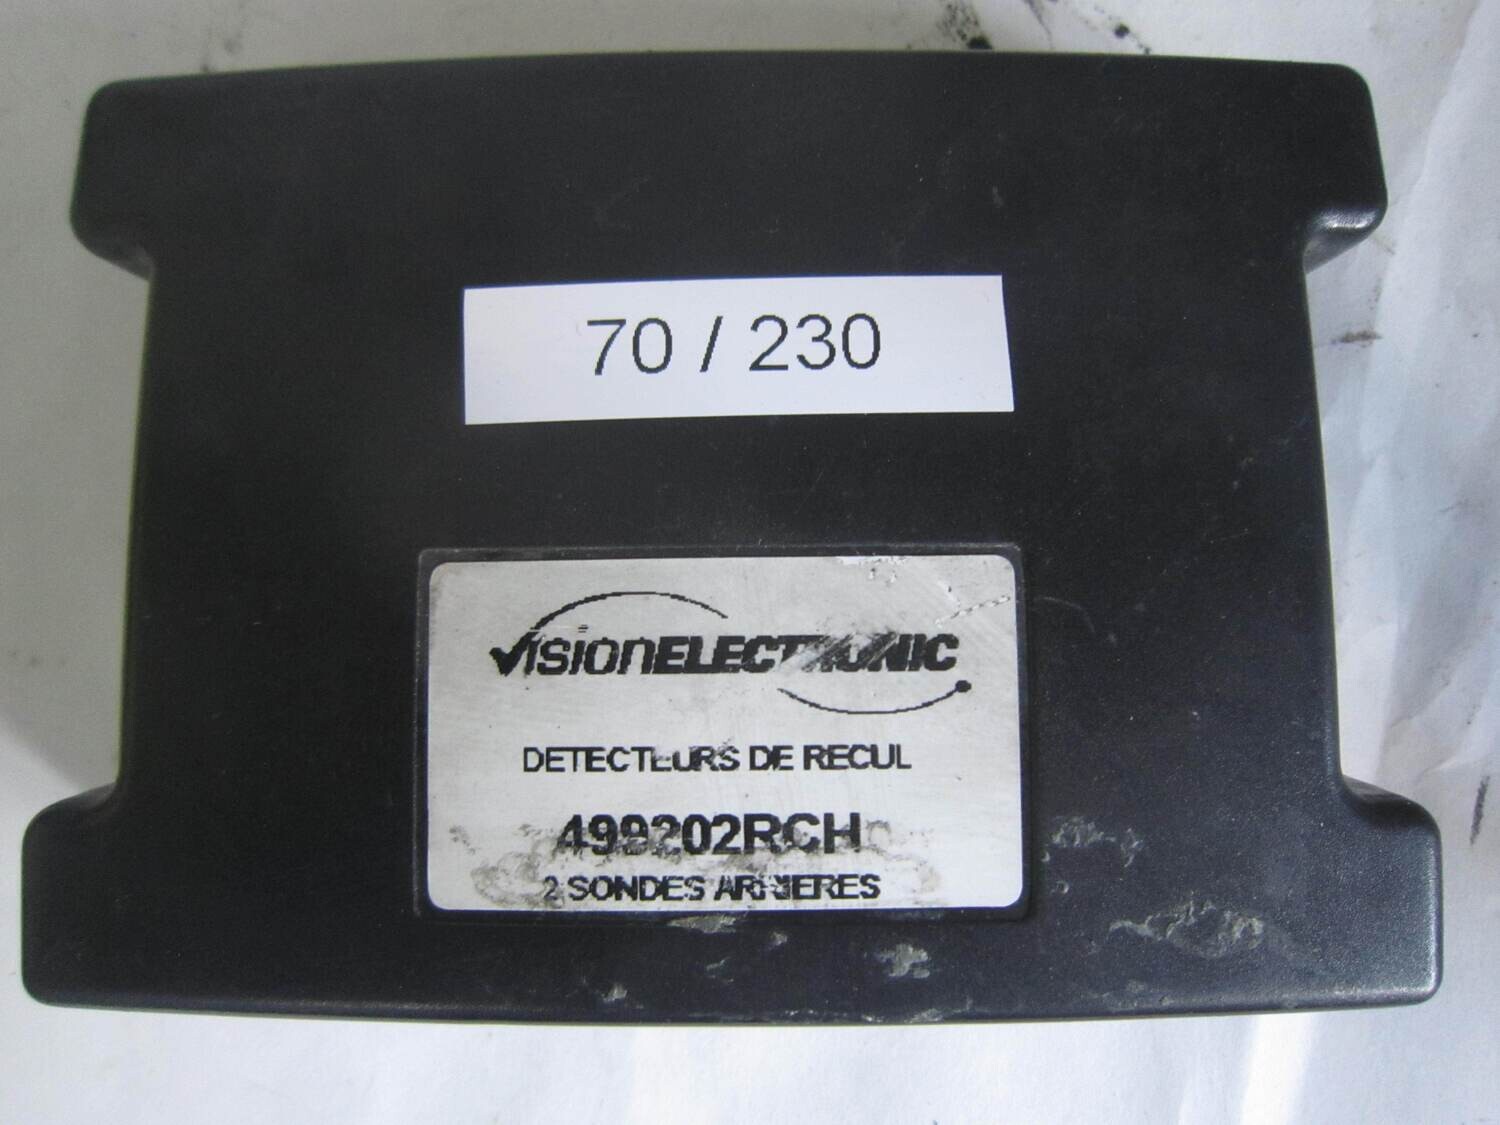 70-230 Modulo di Controllo VisionElectronic 499202RCH CHATENET Generica BAROODER